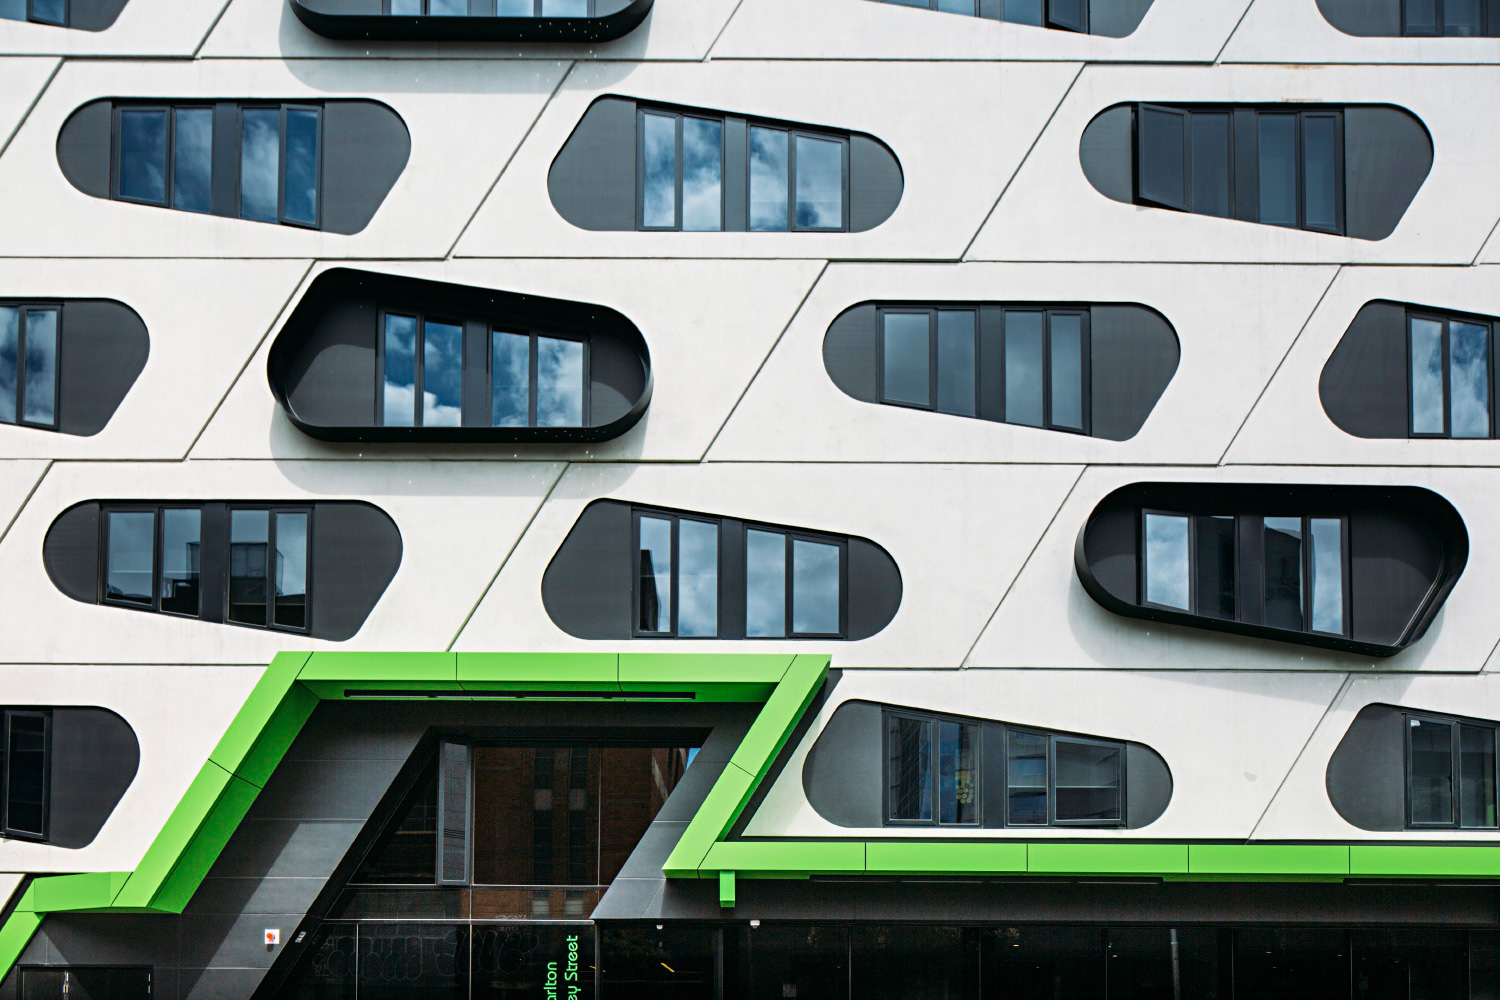 011-Melbourne-Architecture.jpg